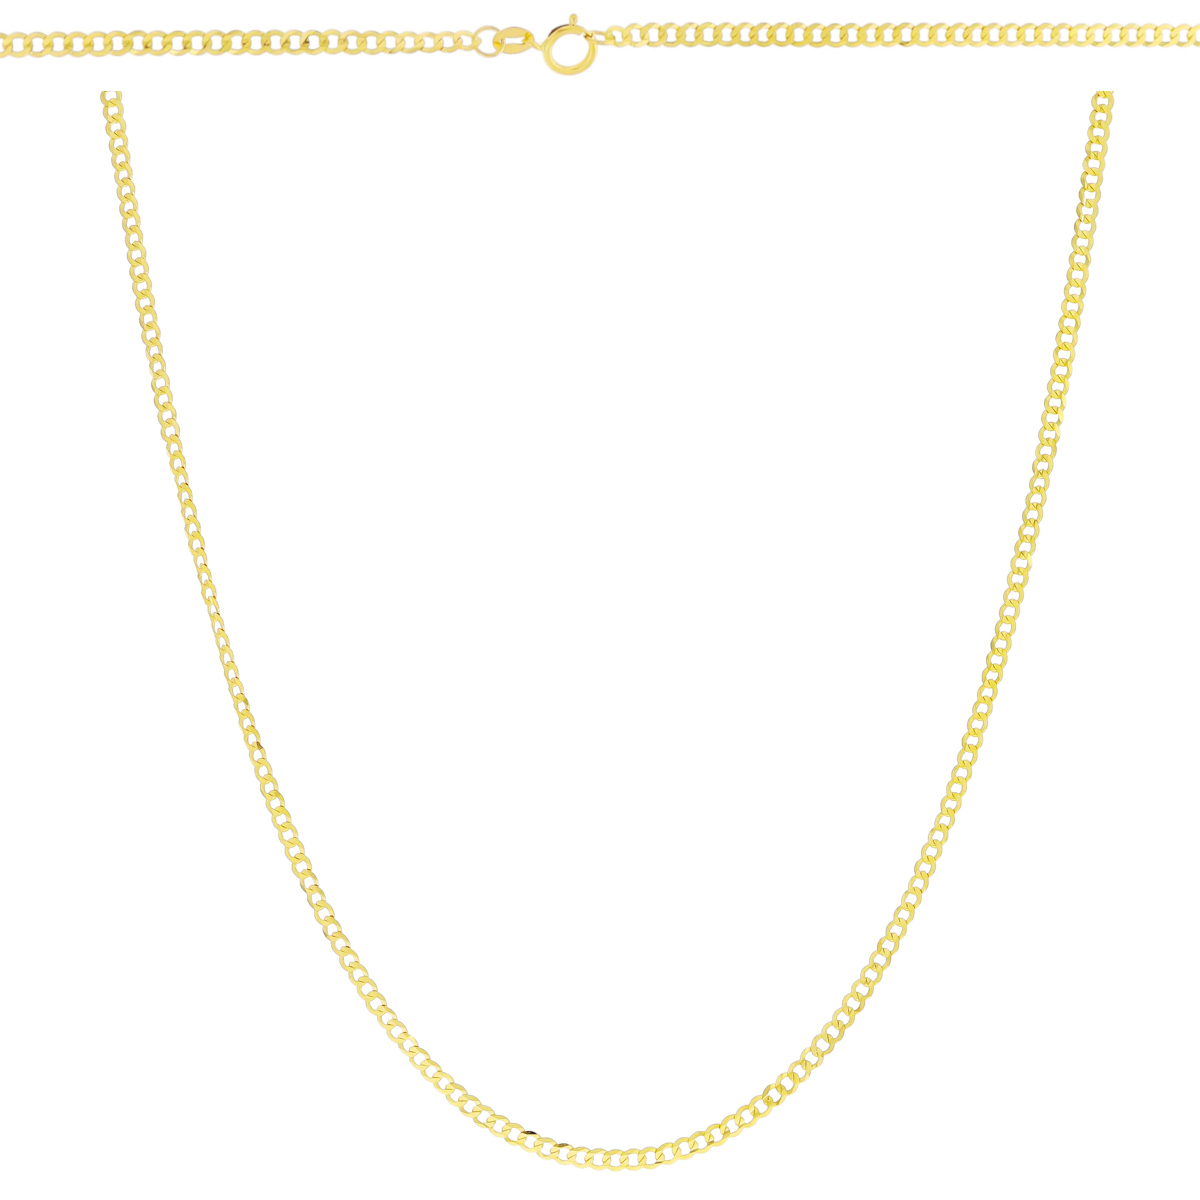 Złoty łańcuszek pełny Pancerka 55 cm pr. 585